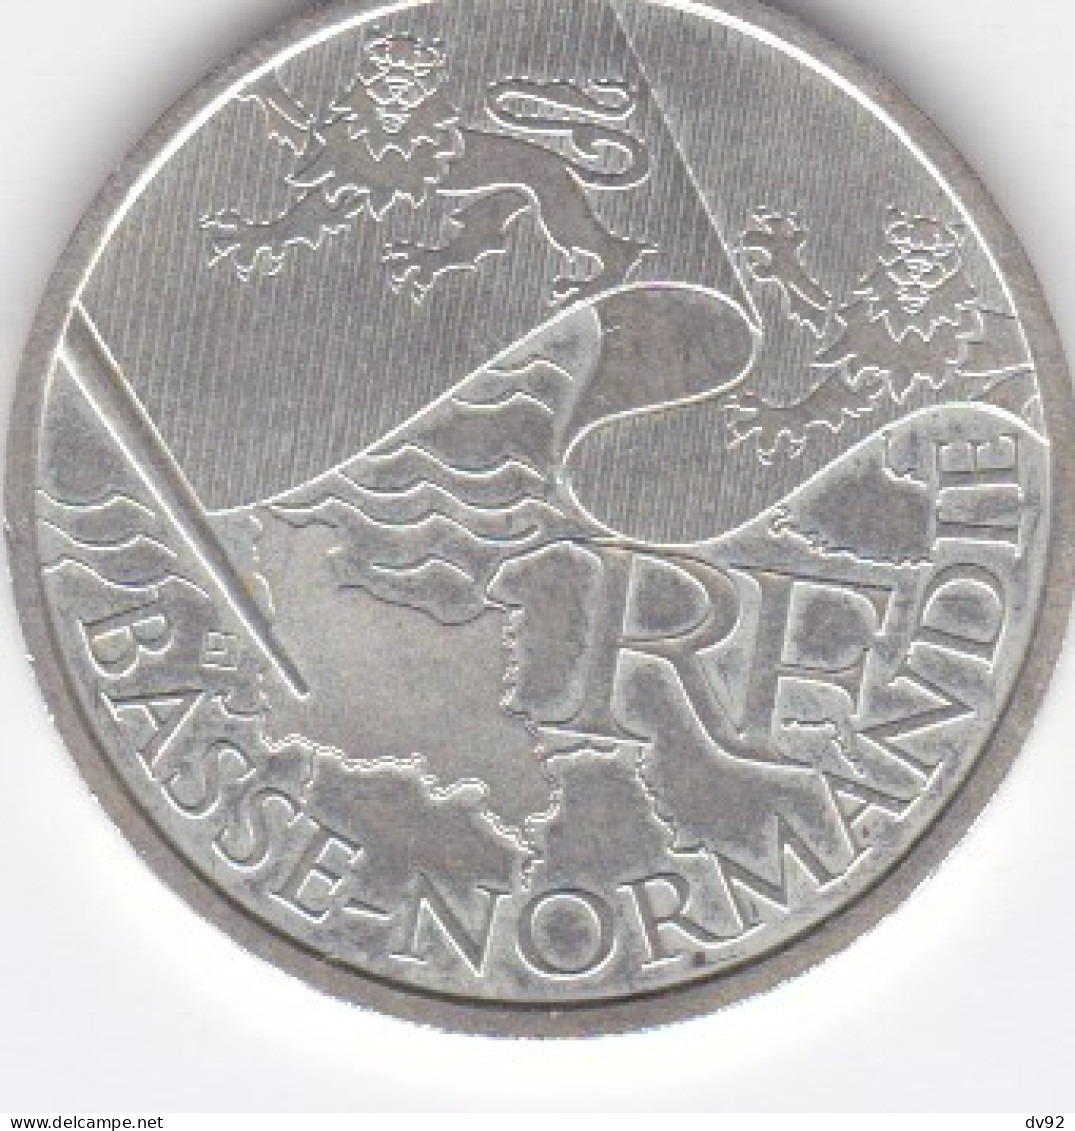 FRANCE 10 EUROS BASSE NORMANDIE - France